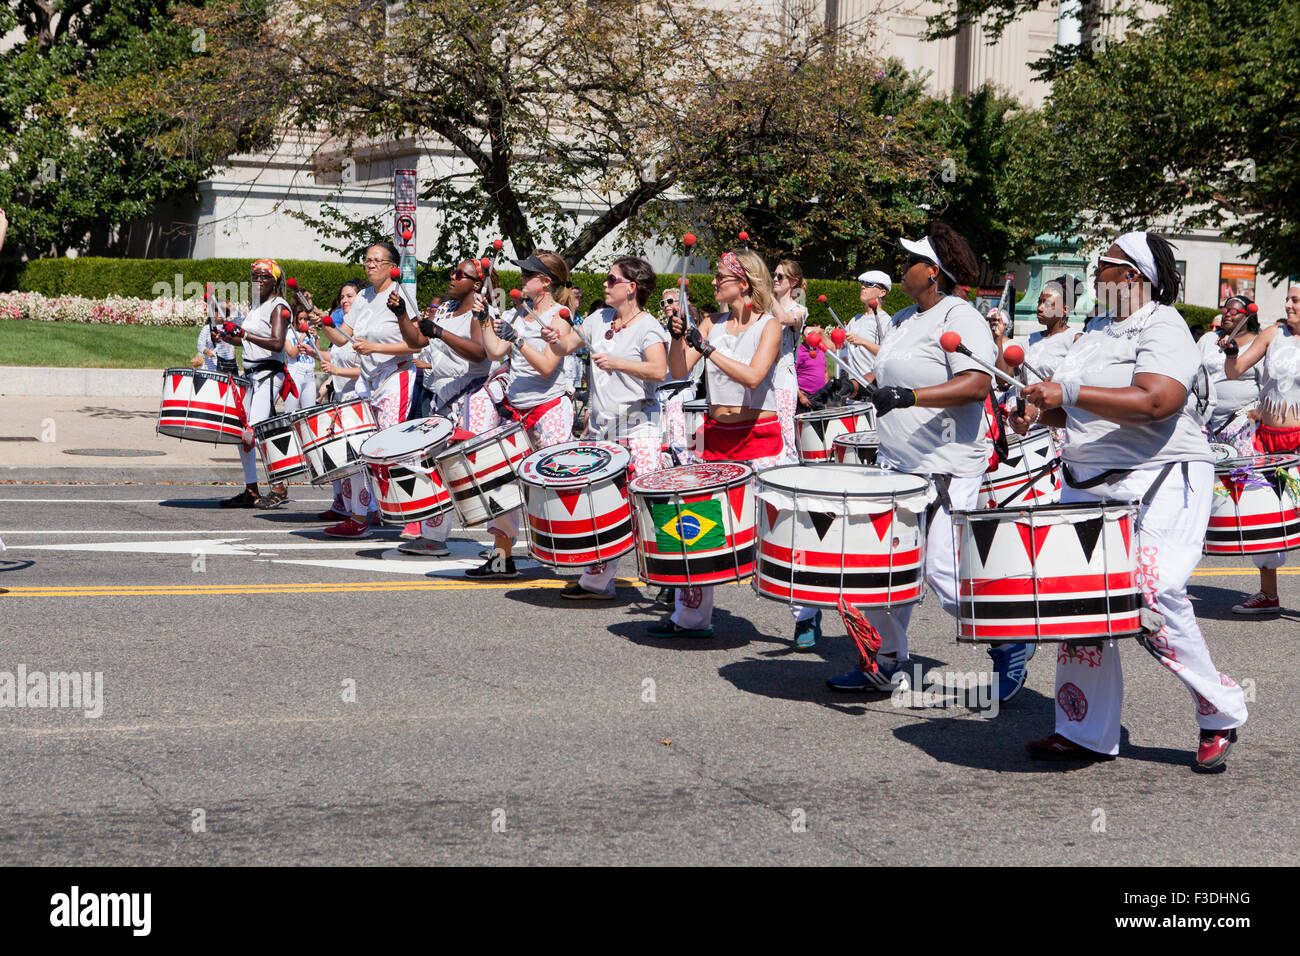 Batalá drummers at parade - Washington, DC USA Stock Photo